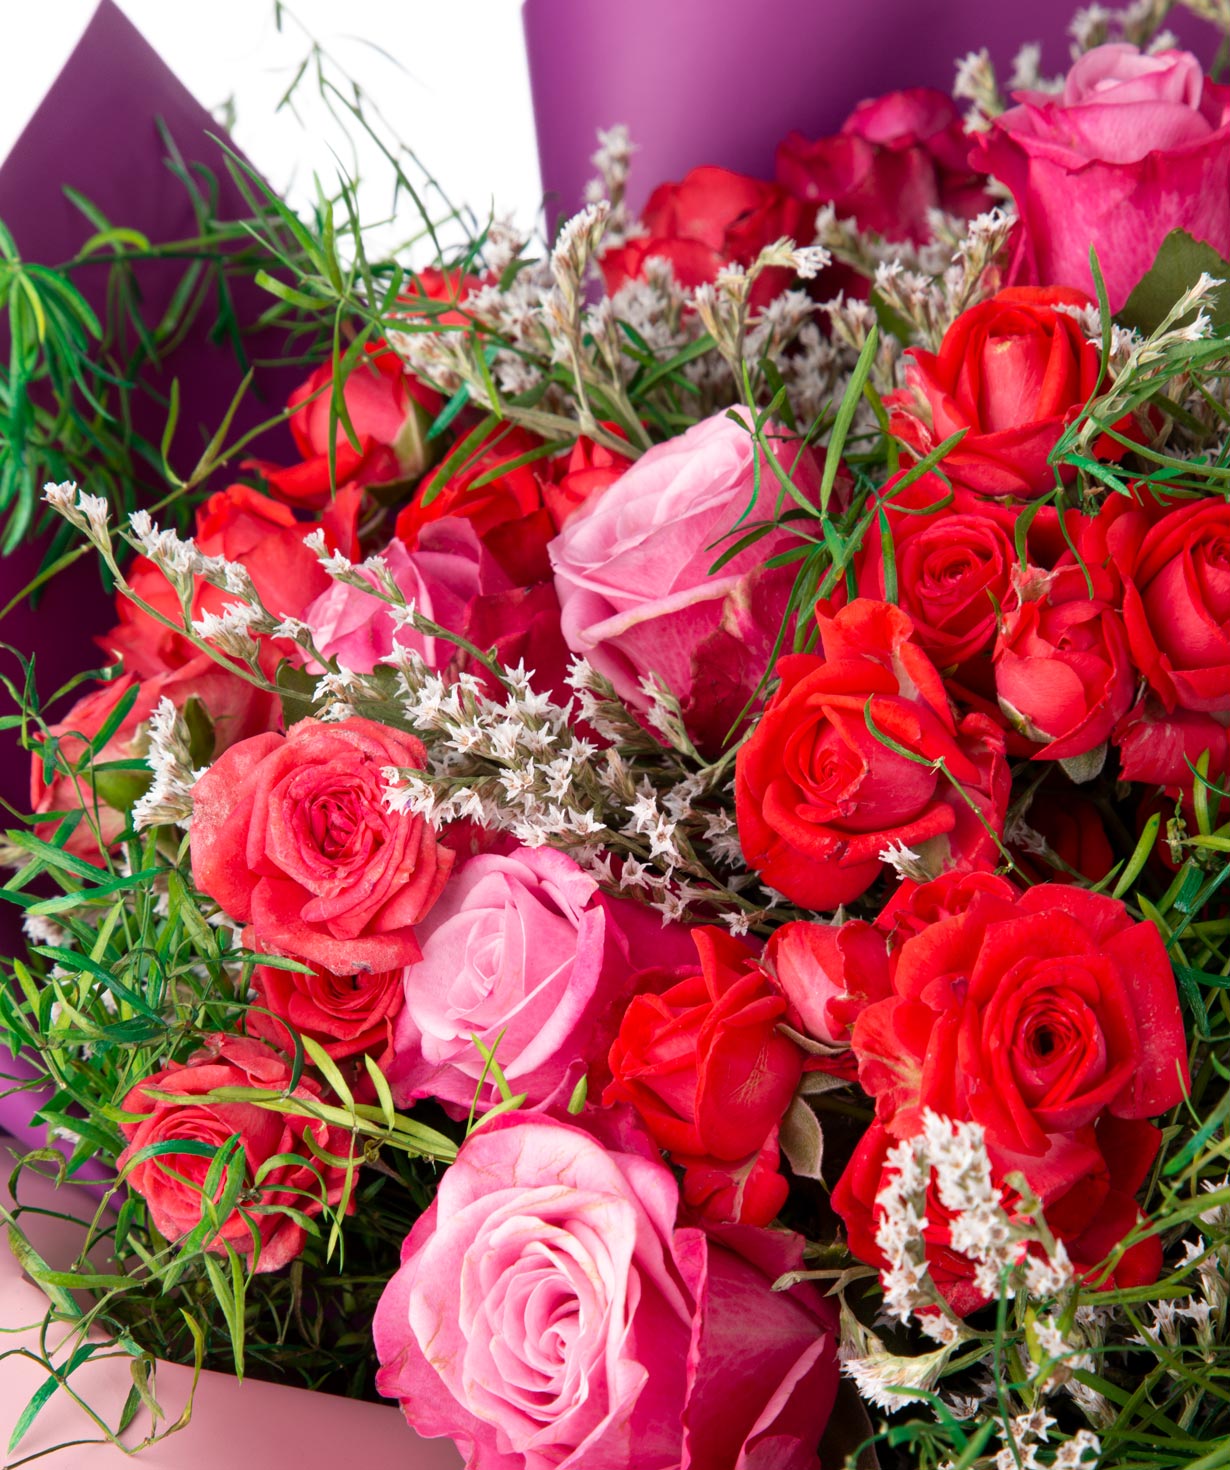 Ծաղկեփունջ «Օրհուս»  վարդերով և դաշտային ծաղիկներով